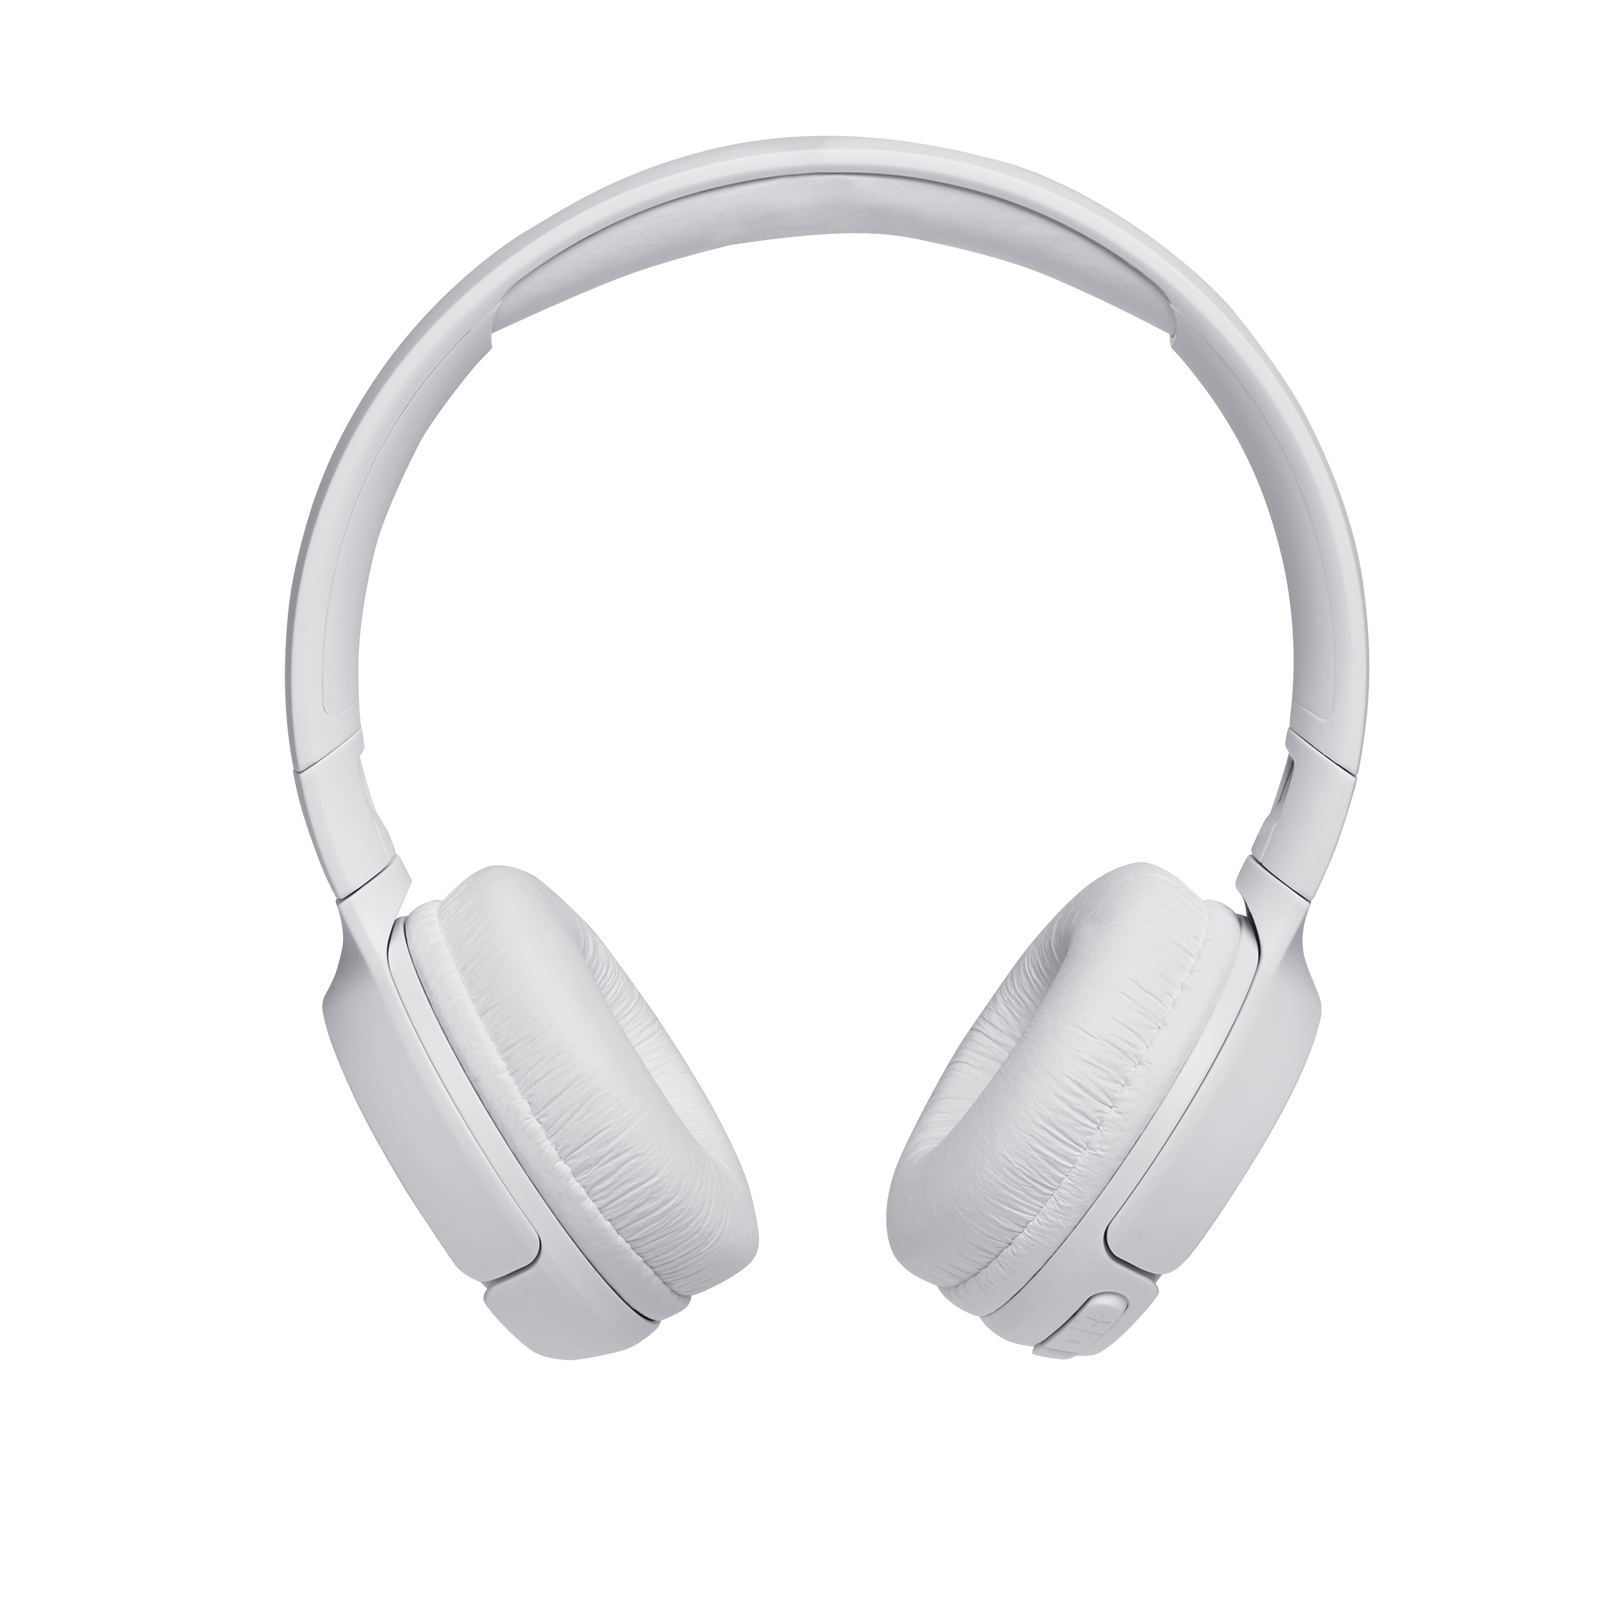 JBL Tune 500BT - White - Wireless on-ear headphones - Front